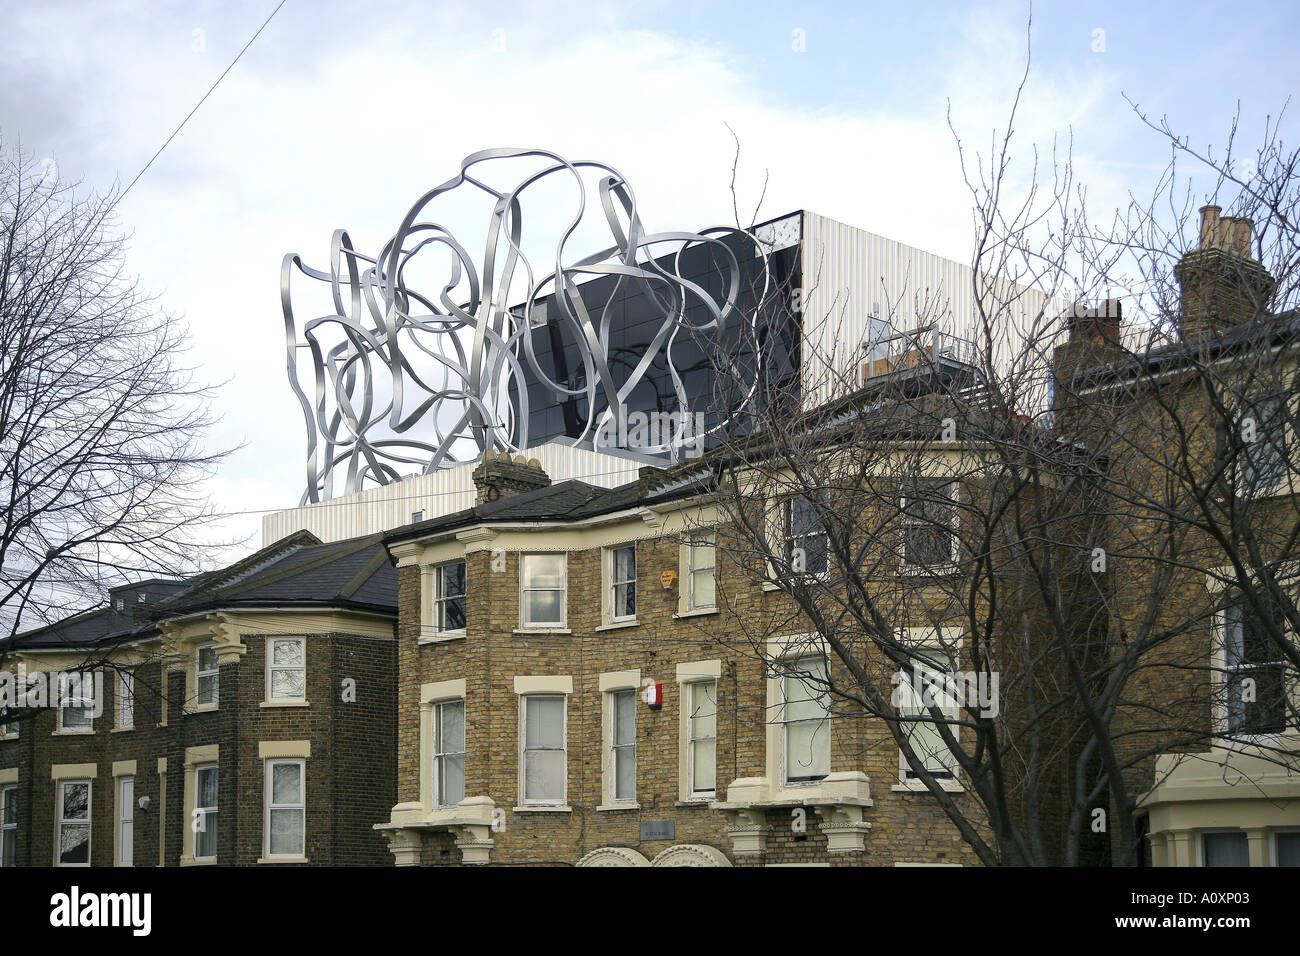 Ben Pimlott Edificio, orafi School of Art di New Cross, Londra, 2005. Scultura in acciaio sulla terrazza sul tetto. Foto Stock